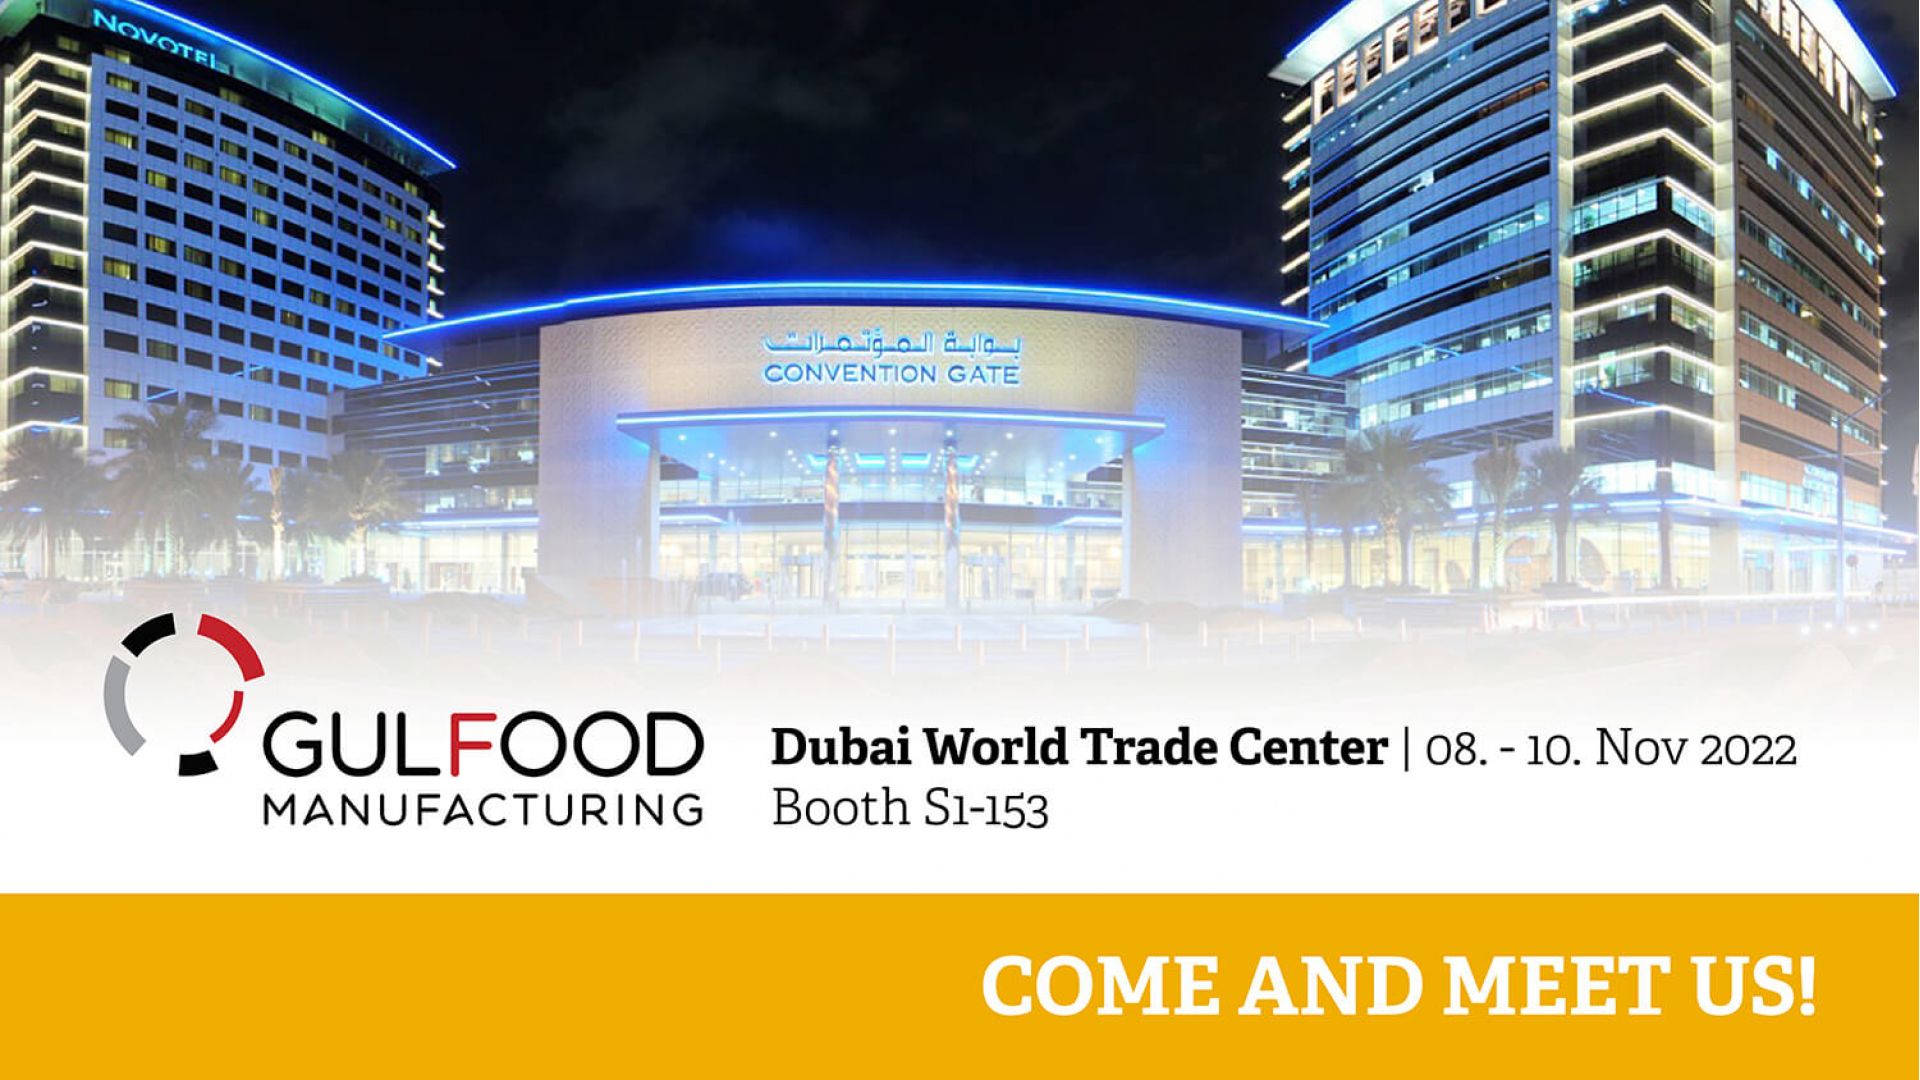 GULFOOD Manufacturing - Dubai World Trade Center